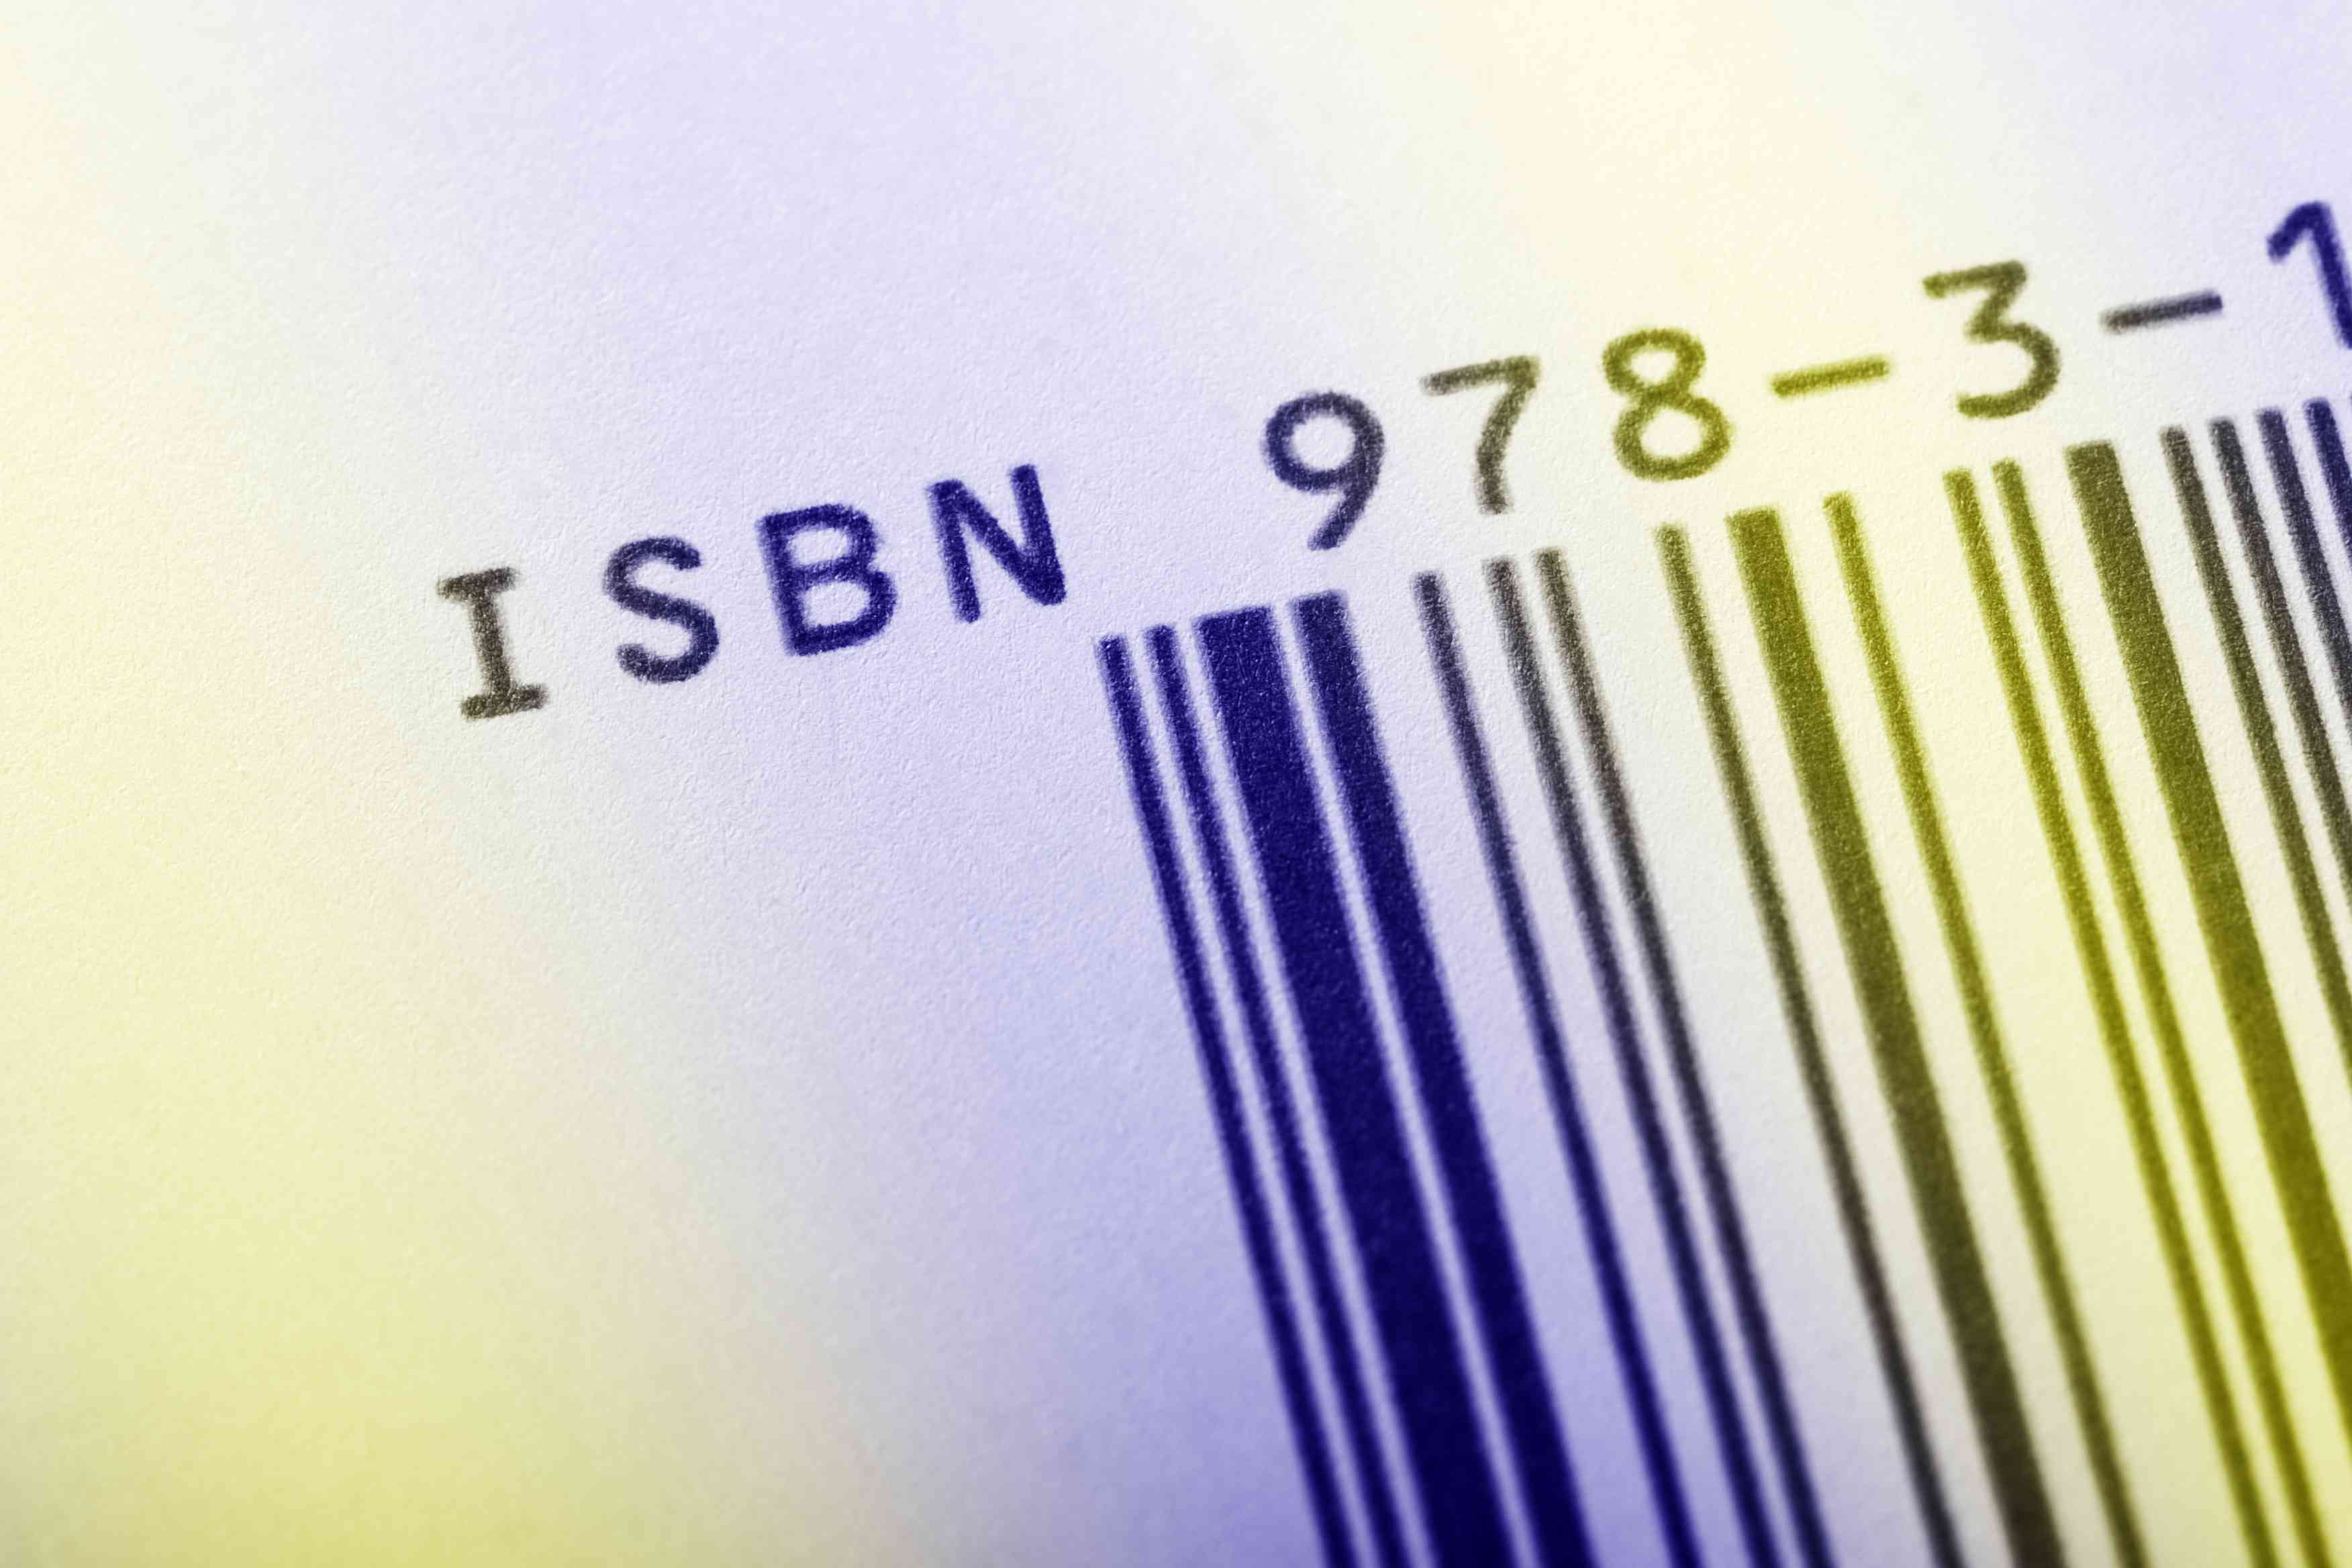 Код ISBN на книзі